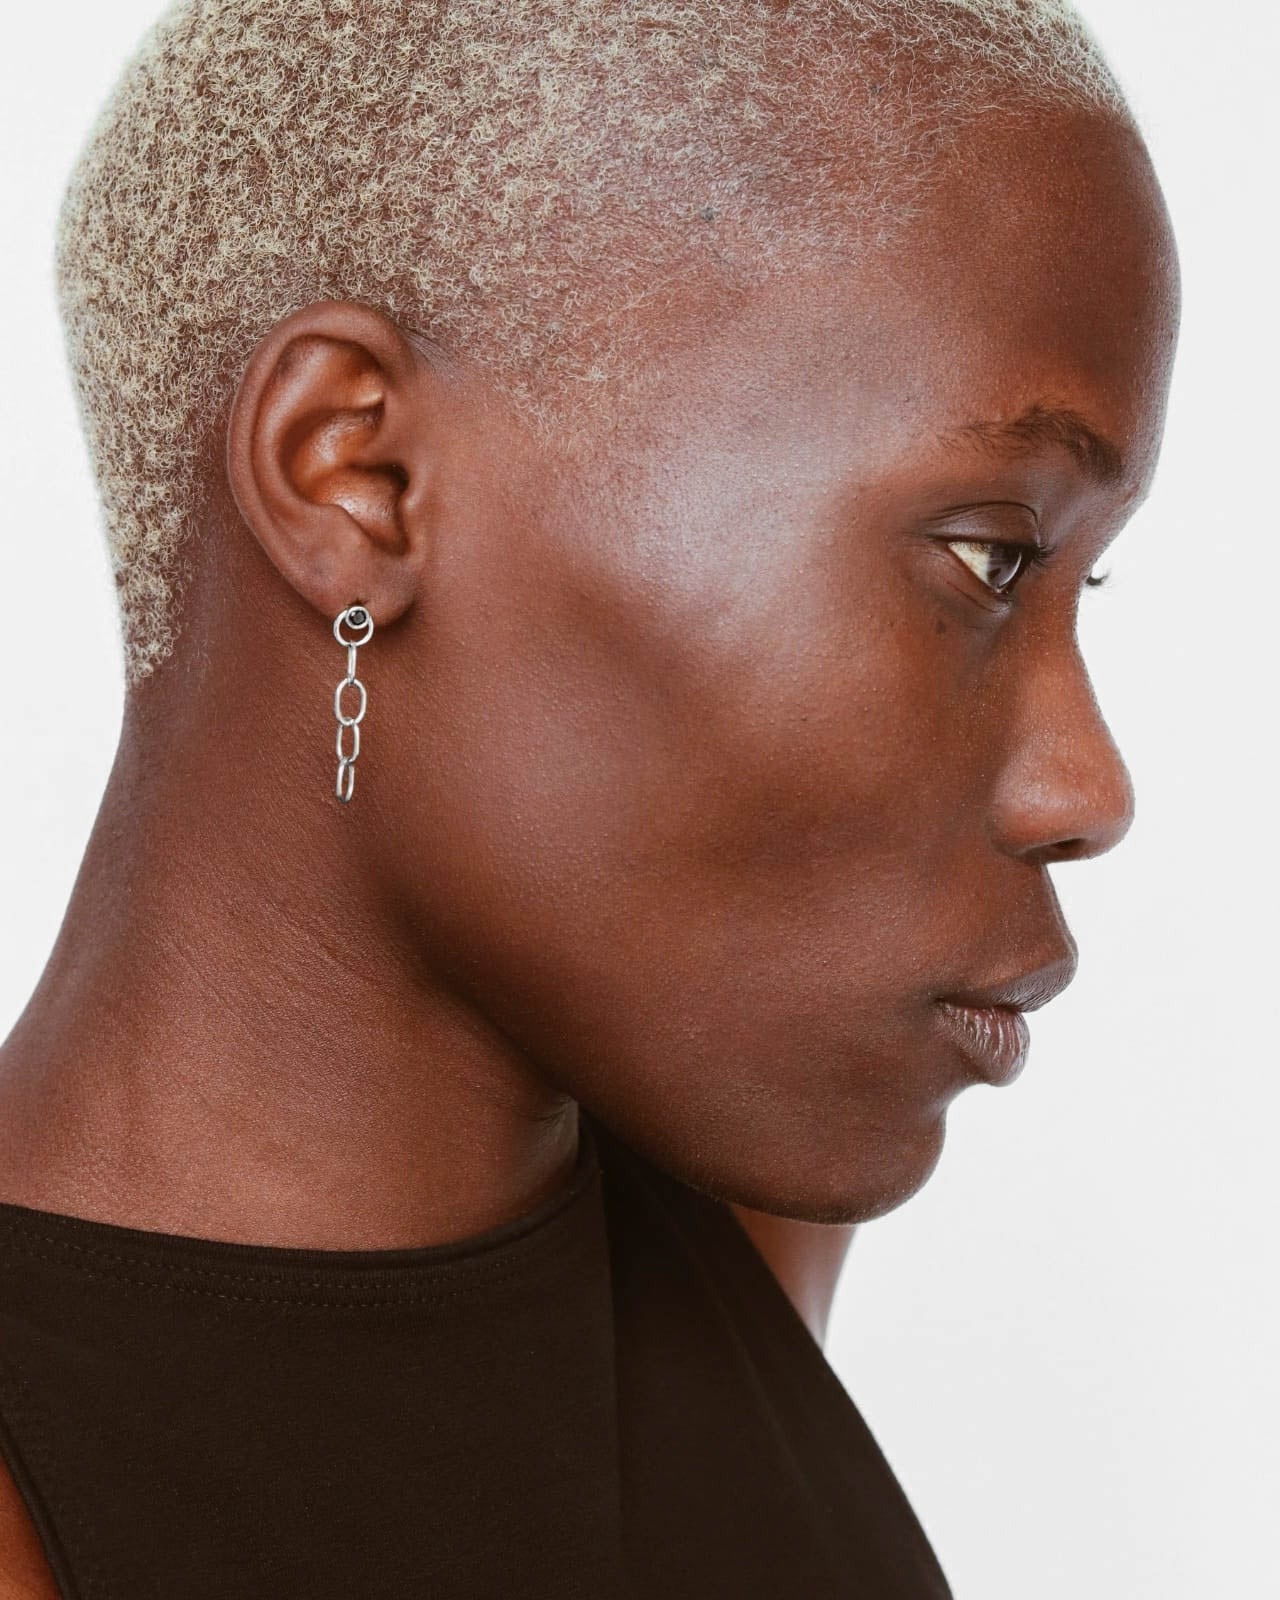 925 Silver - Chain Earrings